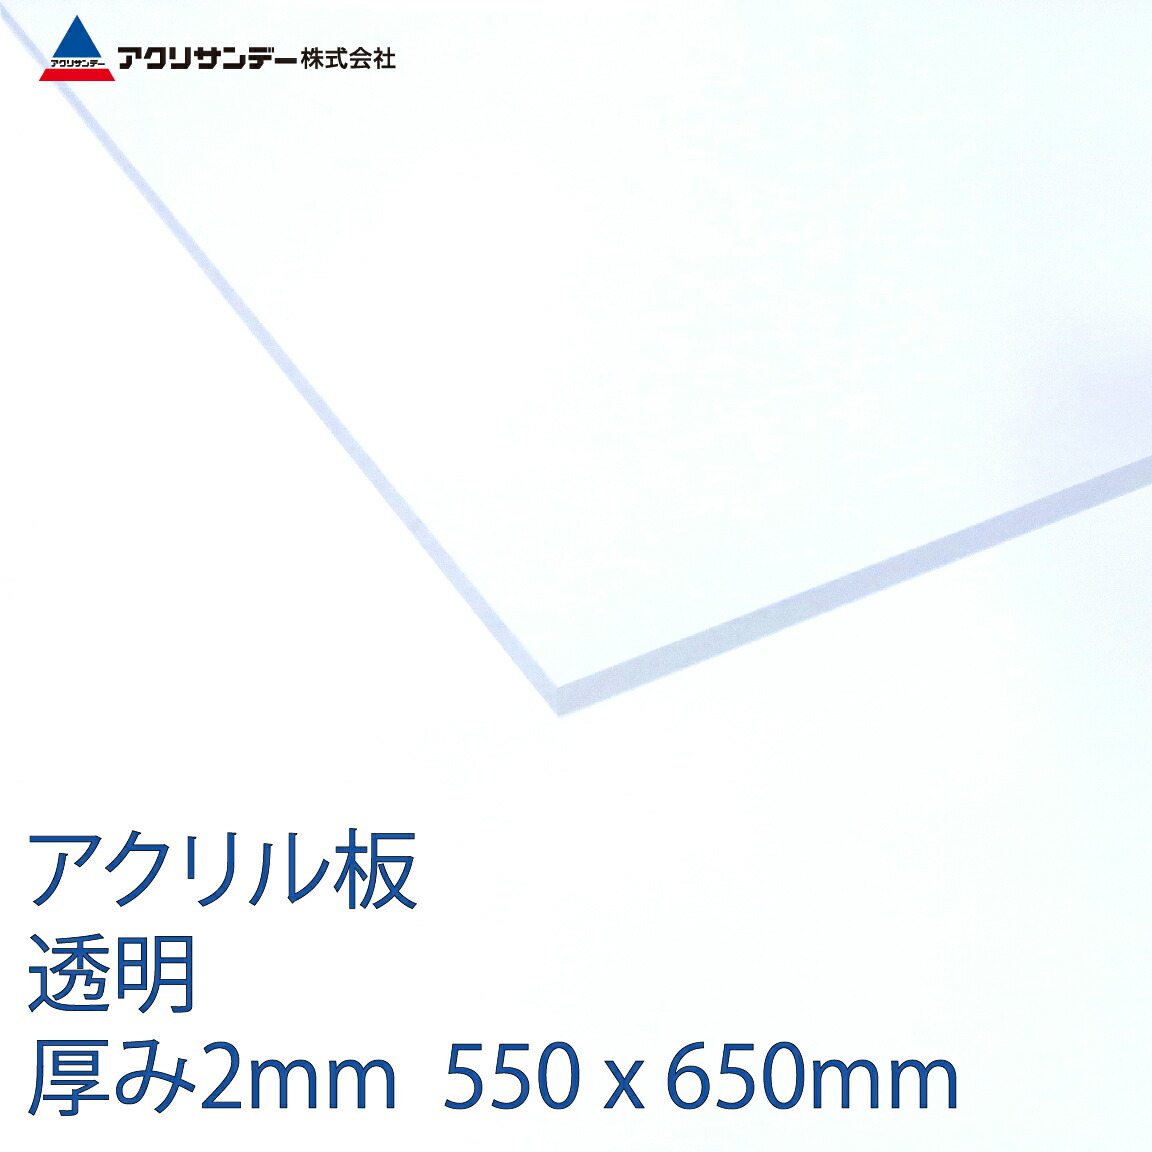 【楽天市場】アクリル板透明 厚み2mm 550x650mm [クリア プラスチック キャスト板 ]：アクリサンデー楽天市場店